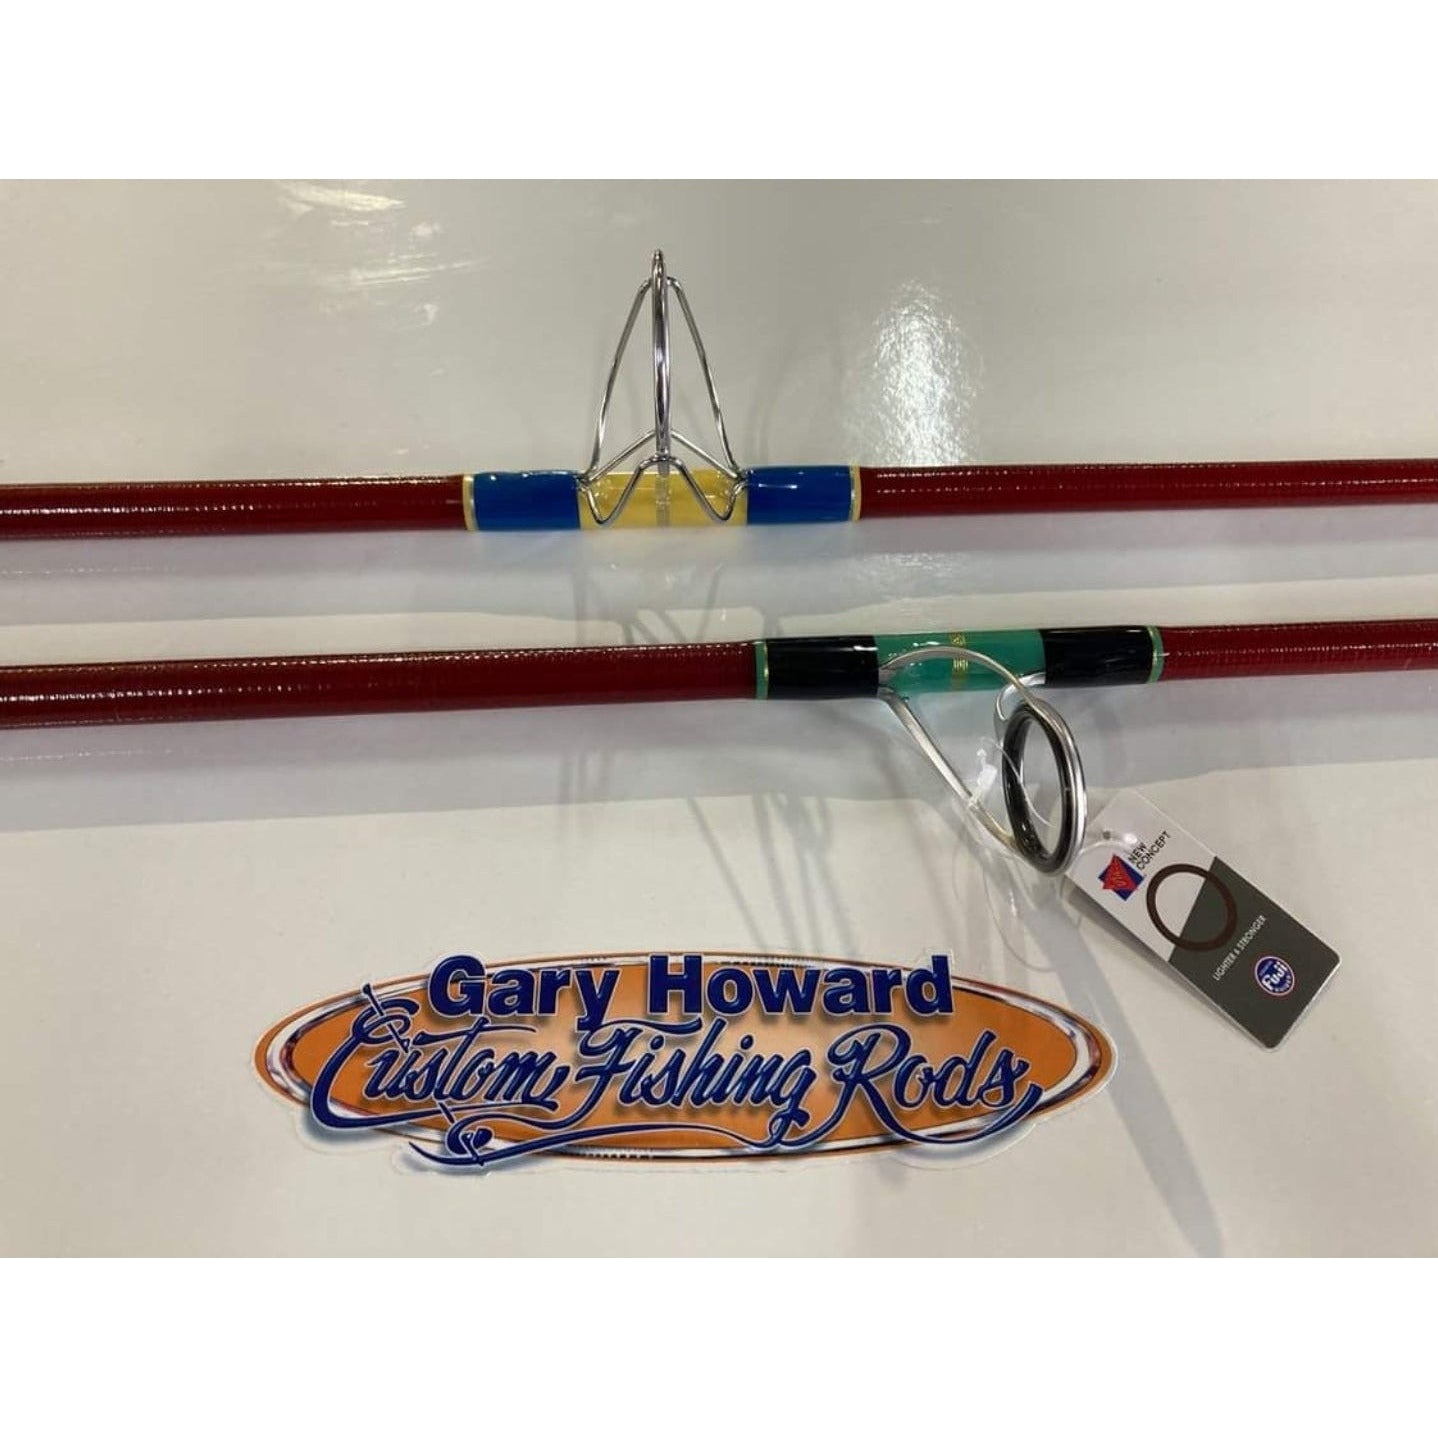 Gary's Custom Fishing Rods